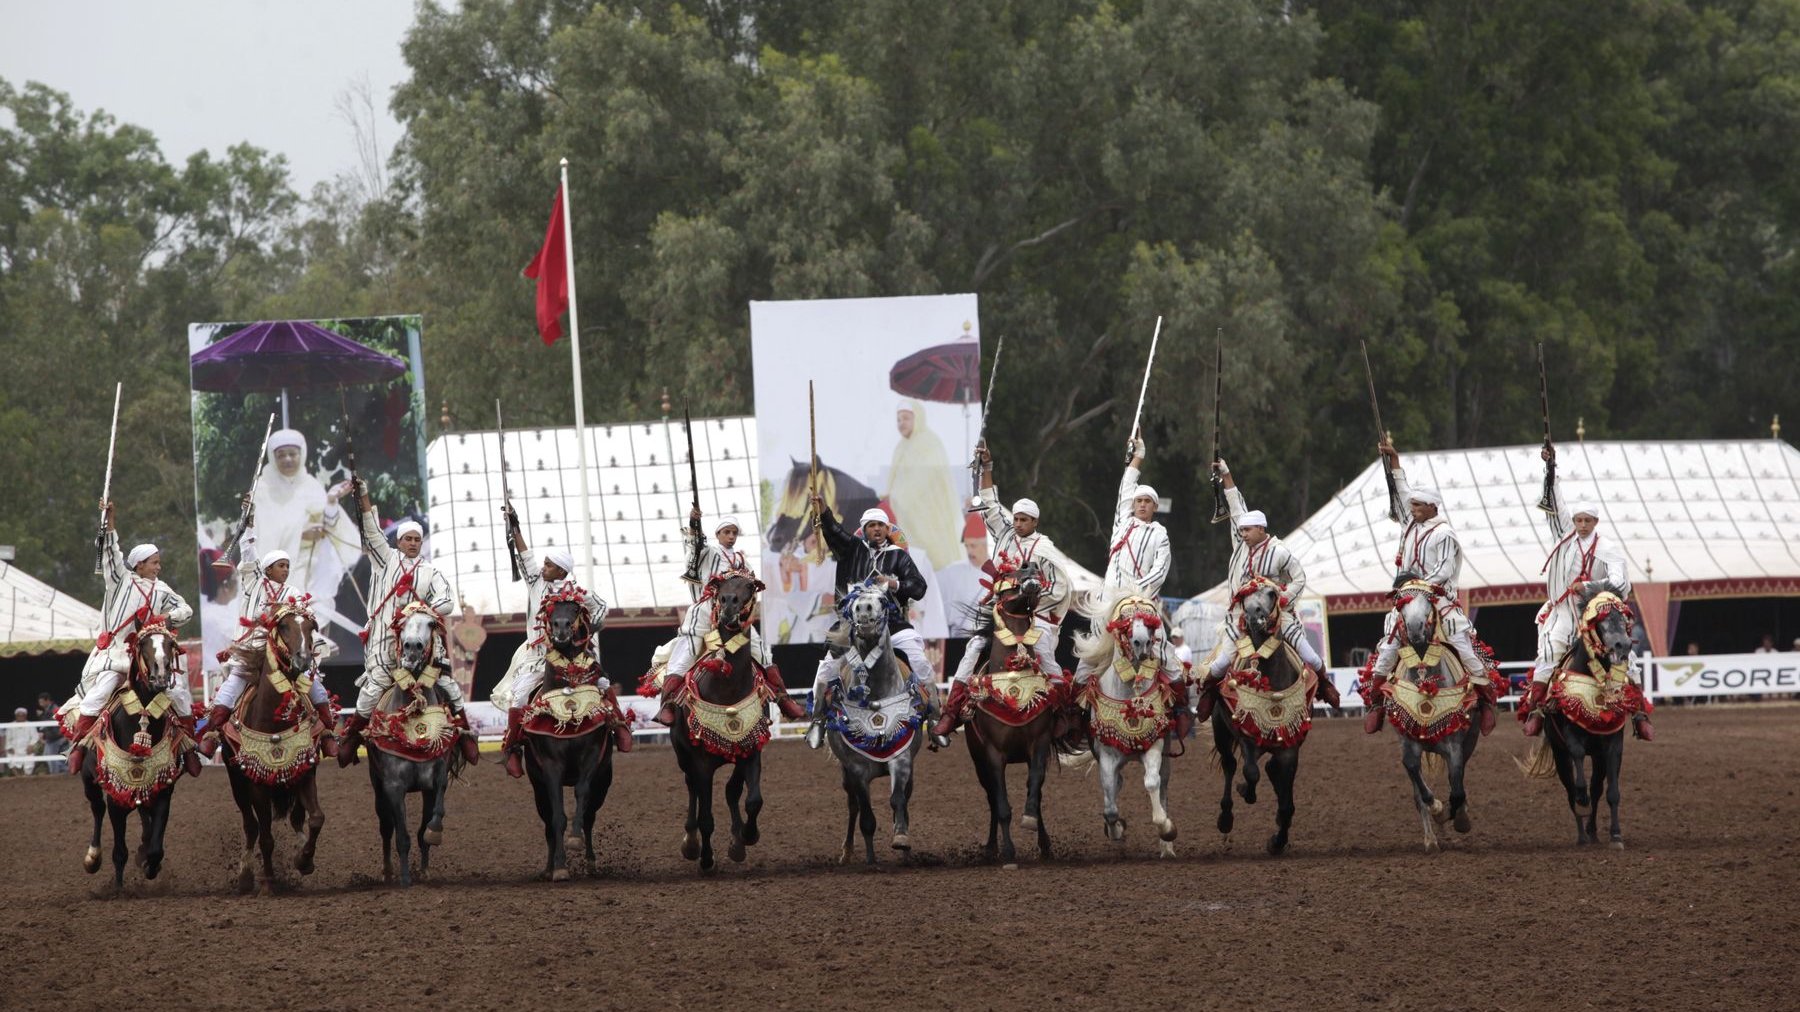 Les arts équestres sont chaque année mis à l'honneur à l'occasion du trophée Hassan II.
